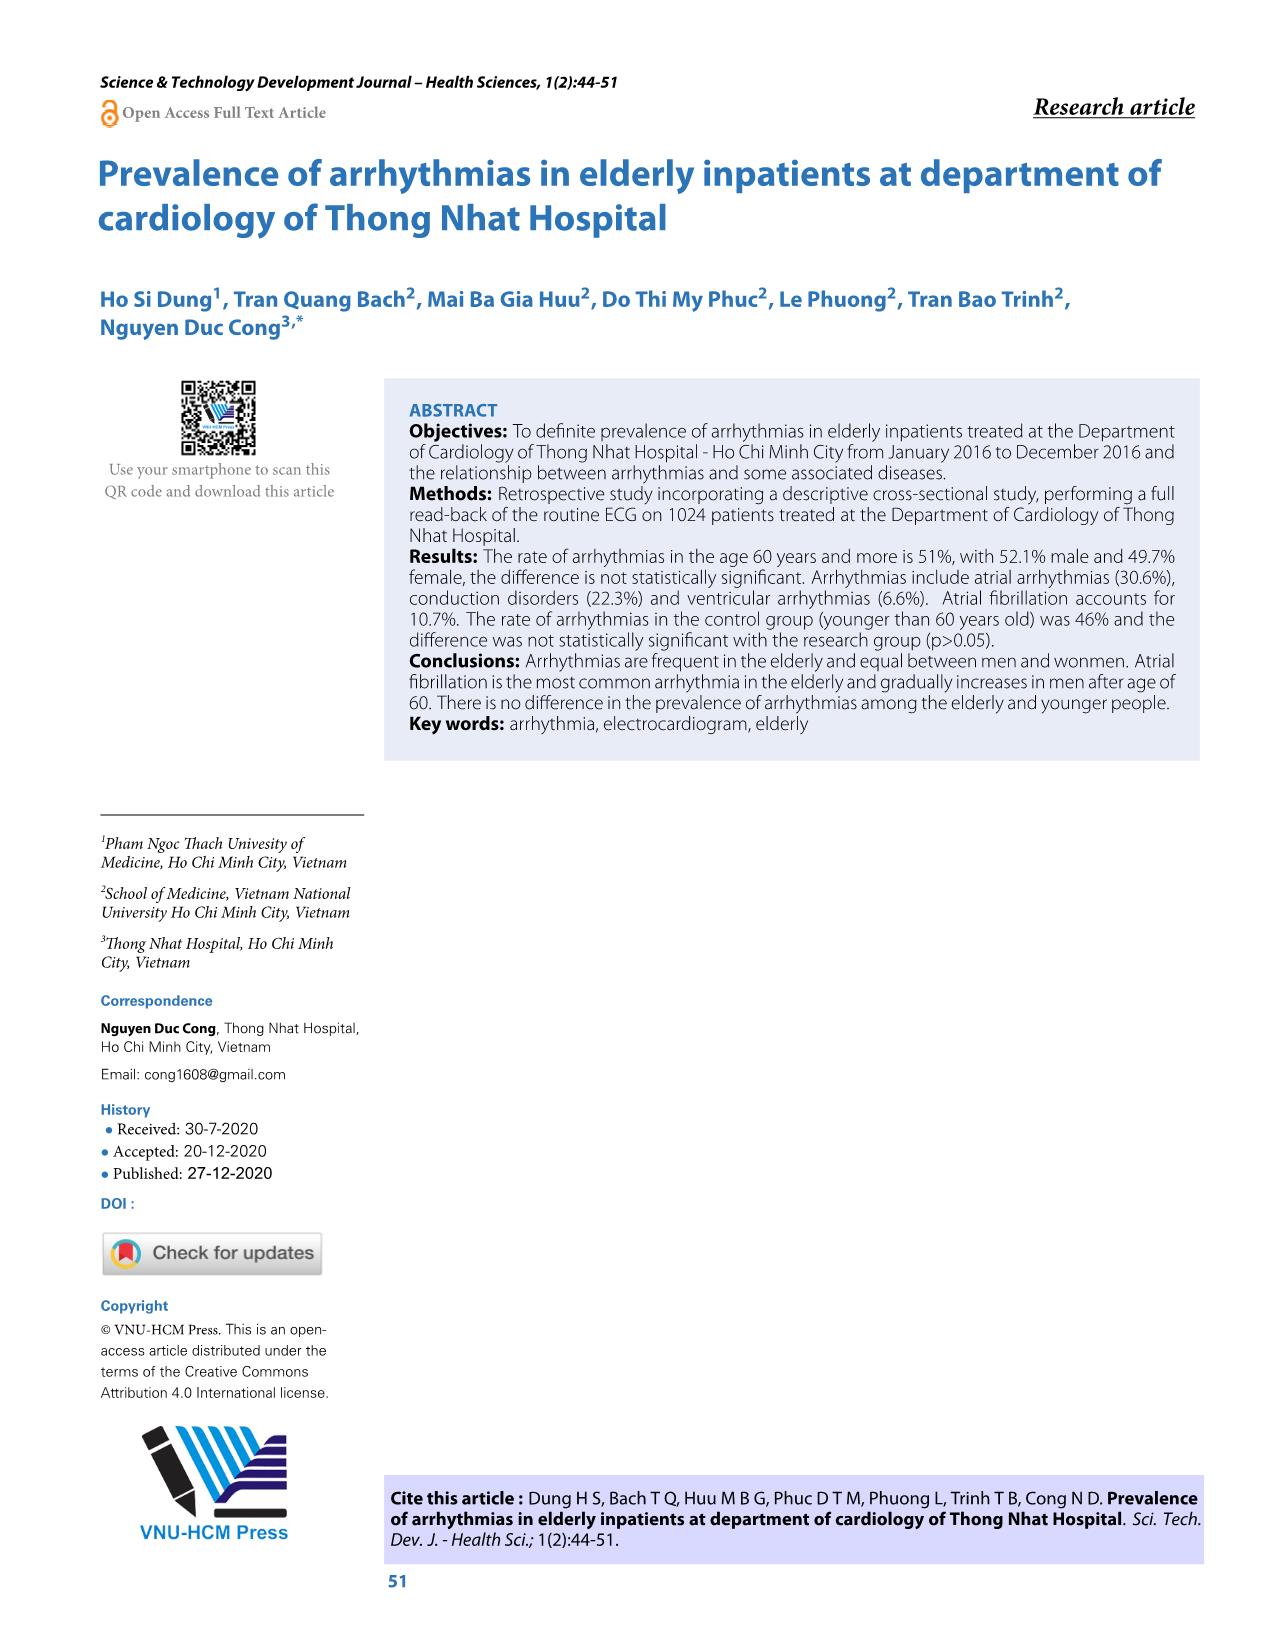 Tỉ lệ các rối loạn nhịp tim trên bệnh nhân cao tuổi điều trị nội trú tại khoa tim mạch - Bệnh viện Thống Nhất trang 8